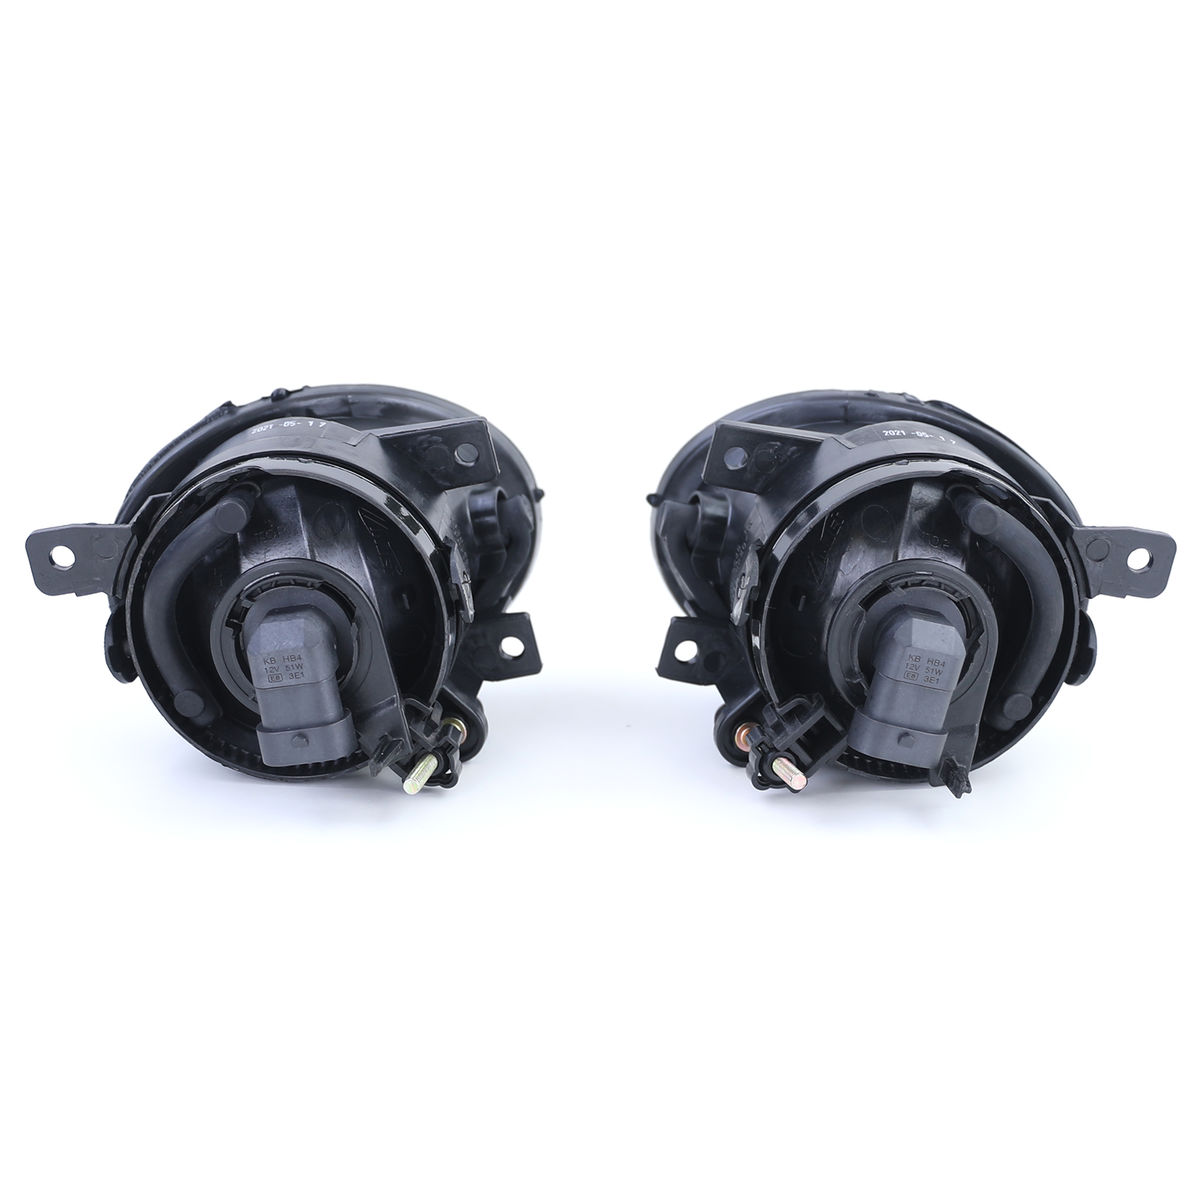 Black Smoked Fog Ligths set For VW T5 2009-2015